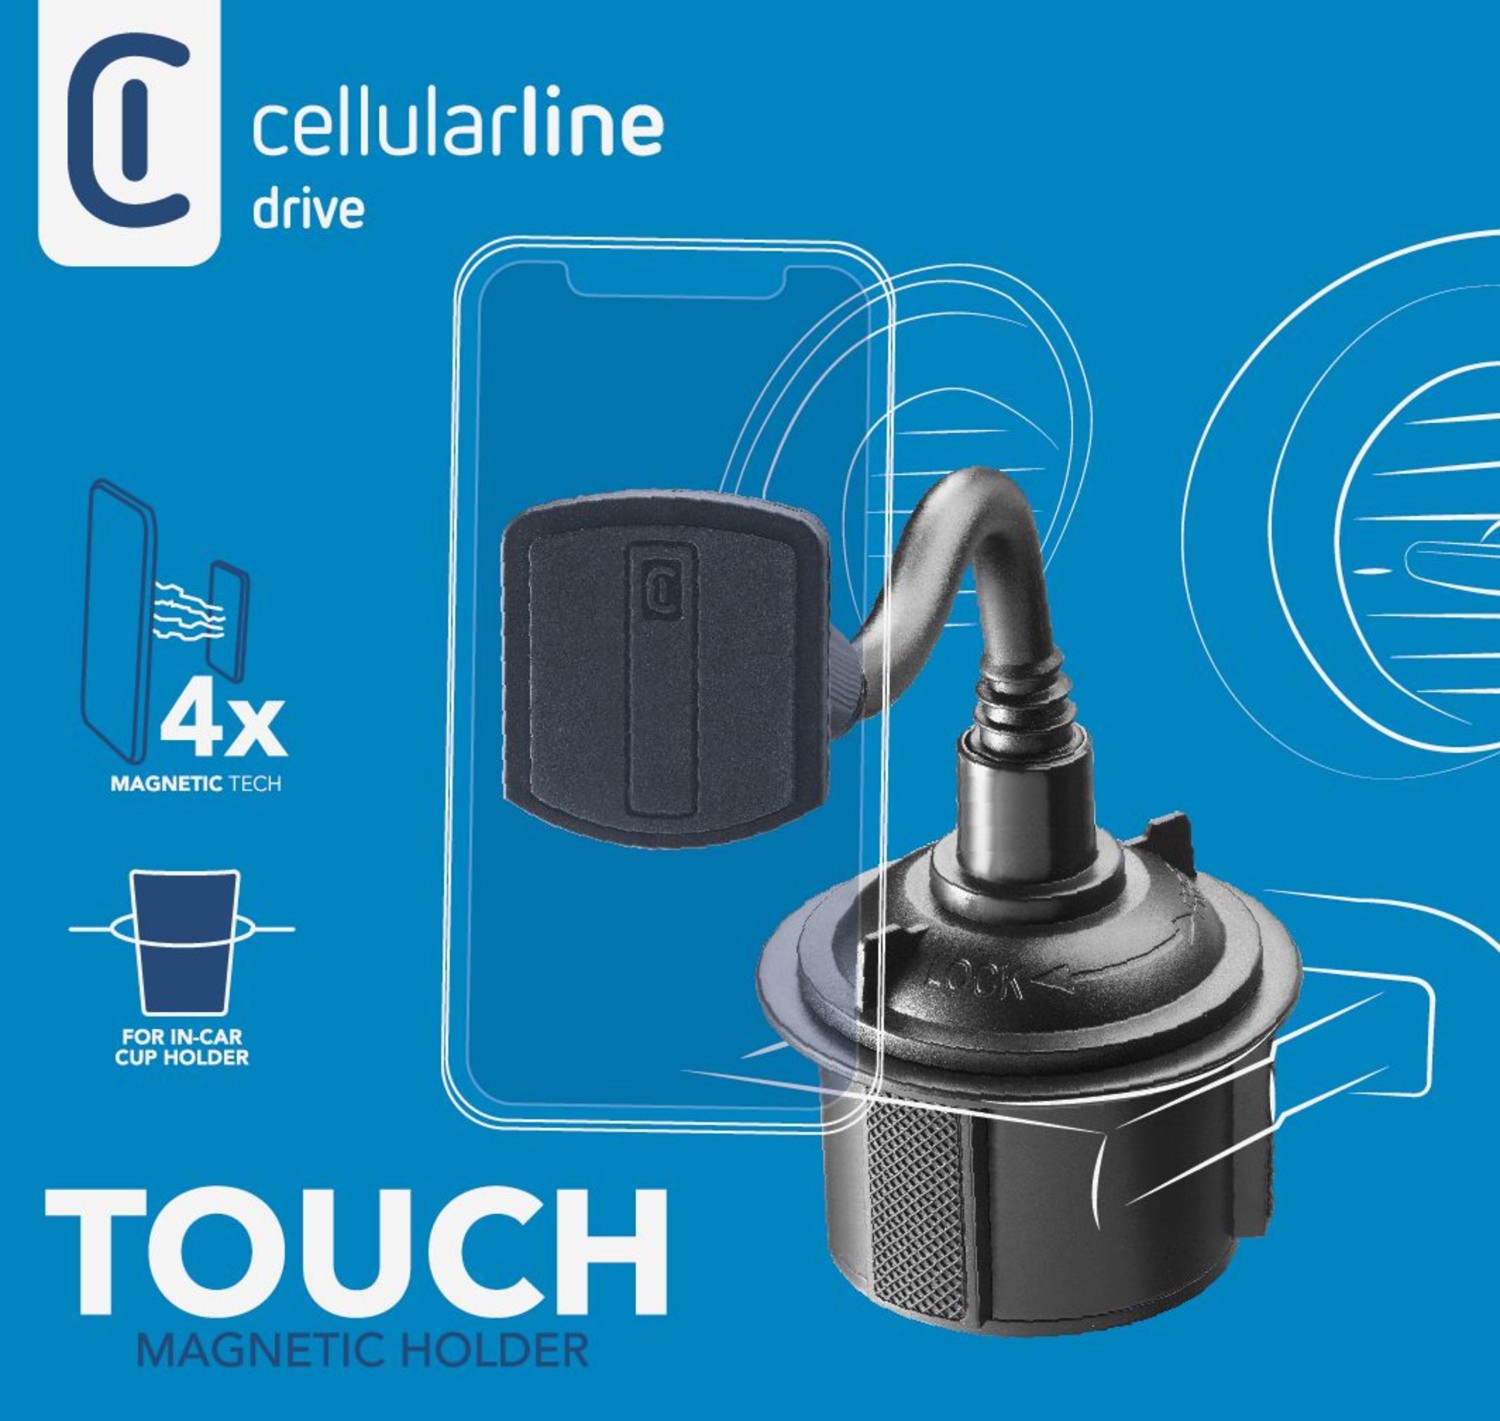 Držák do auta Cellularline Touch Cup k upevnění do držáku nápojů, černá